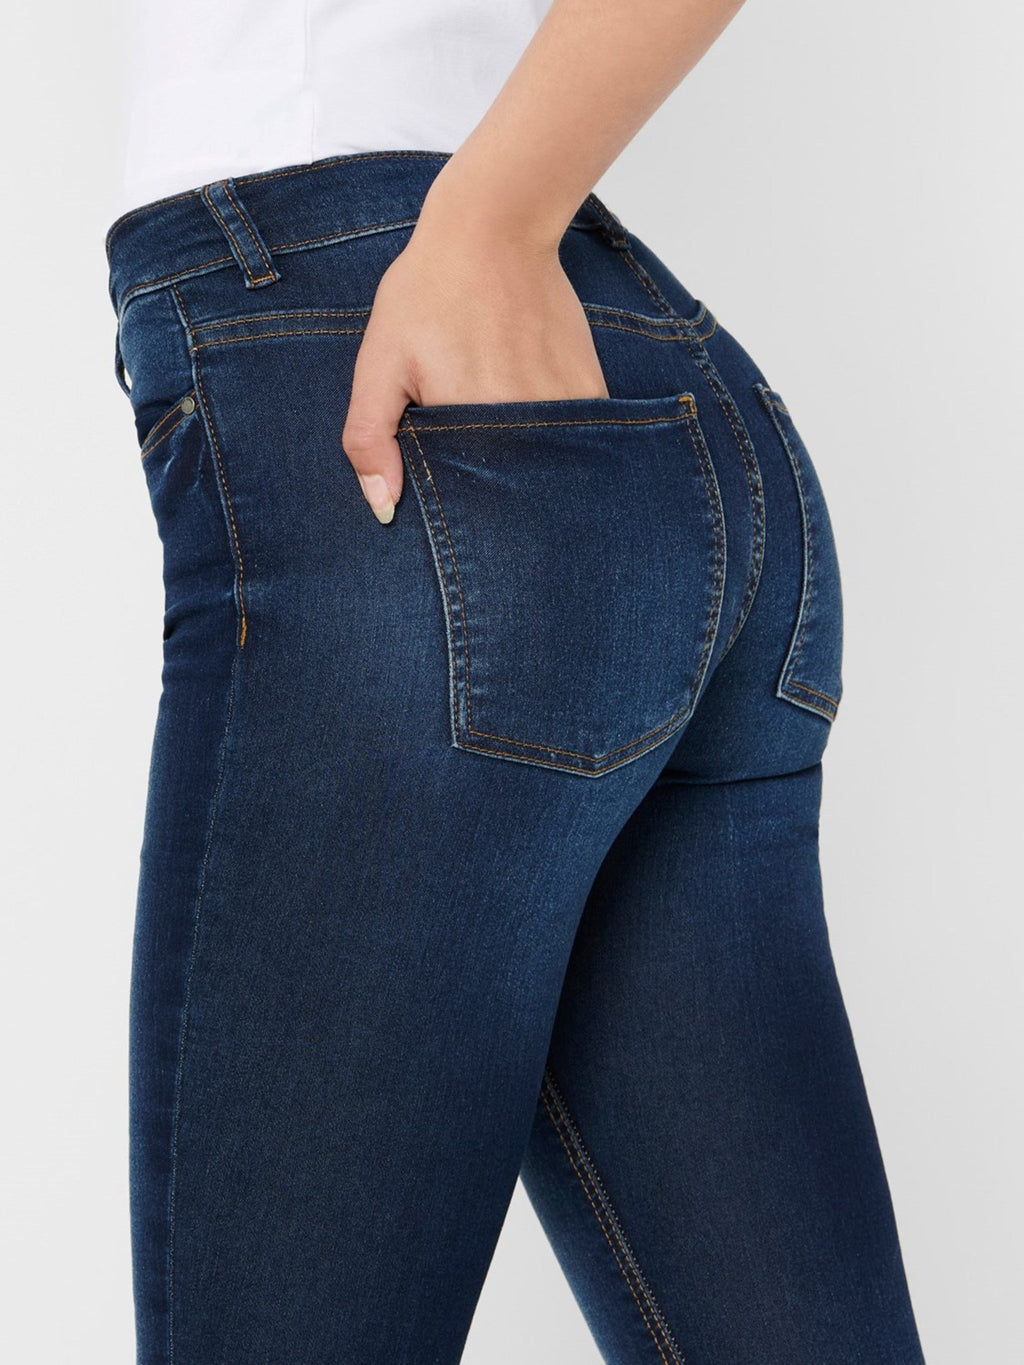 De Originale Performance Jeans - Blå denim (mid waist)